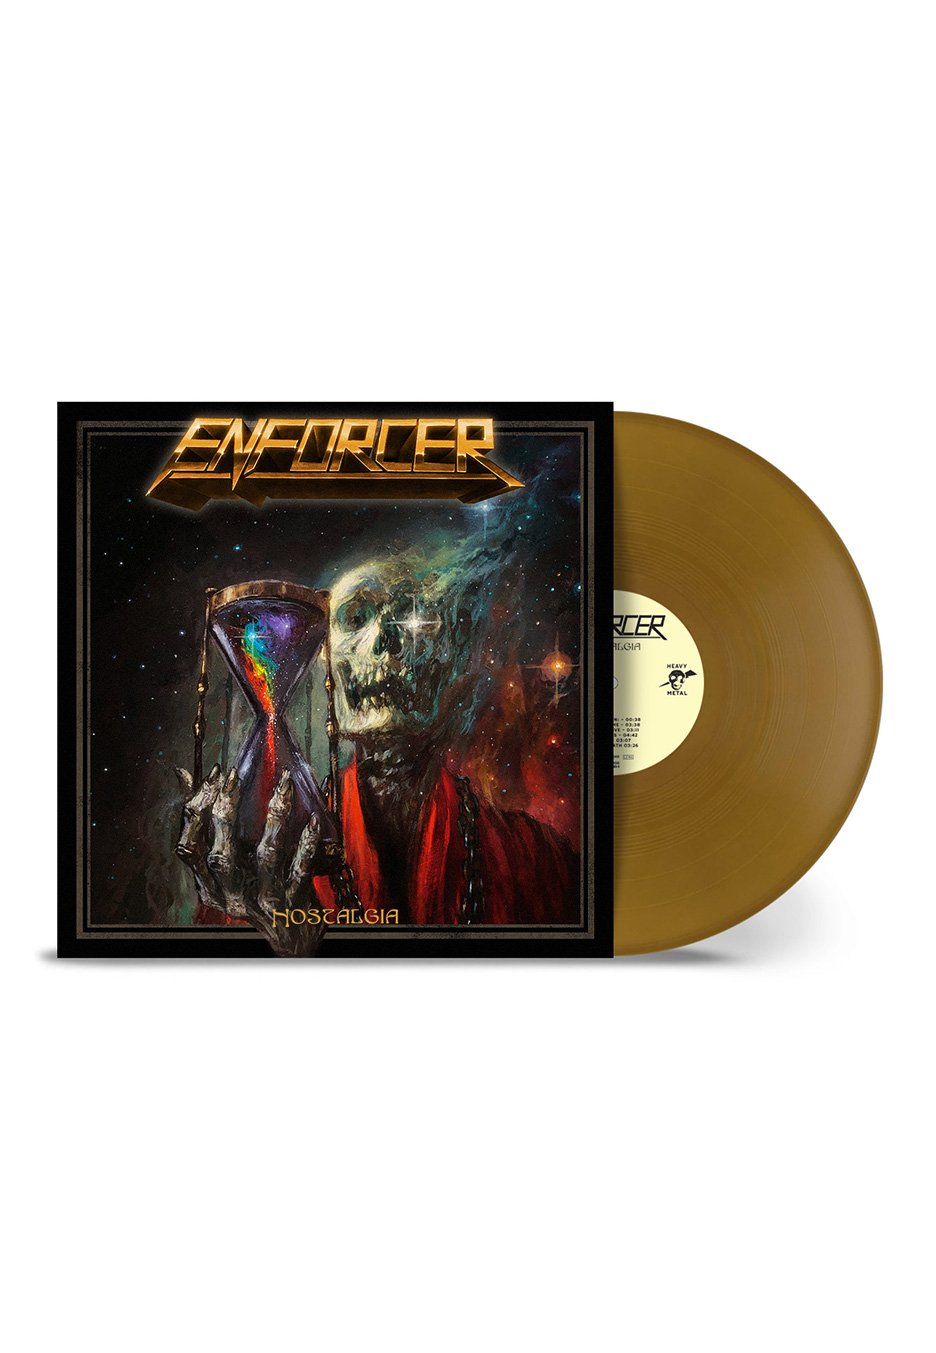 Enforcer - Nostalgia Ltd. Gold - Colored Vinyl + Poster